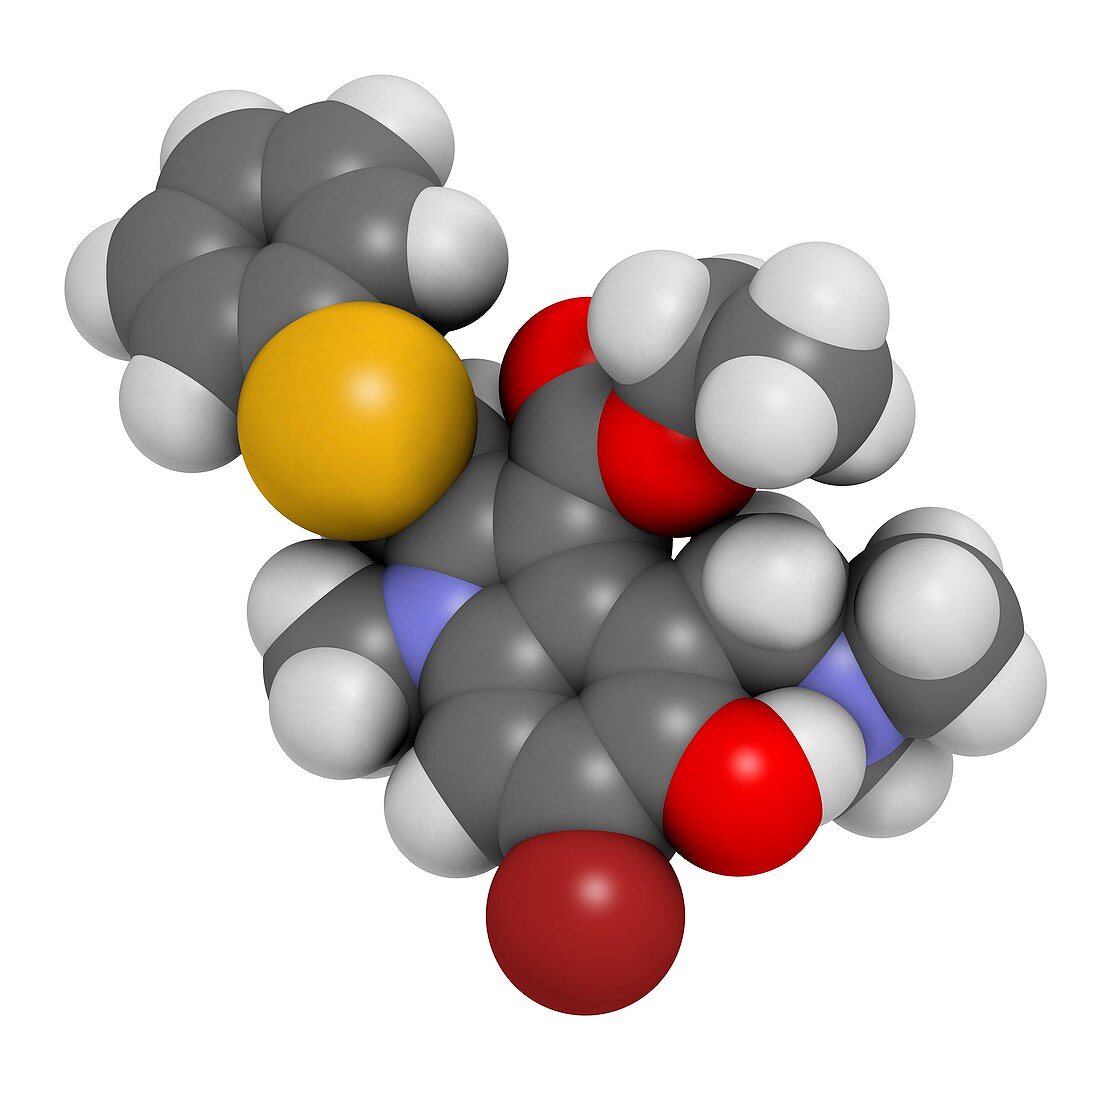 Arbidol influenza drug molecule